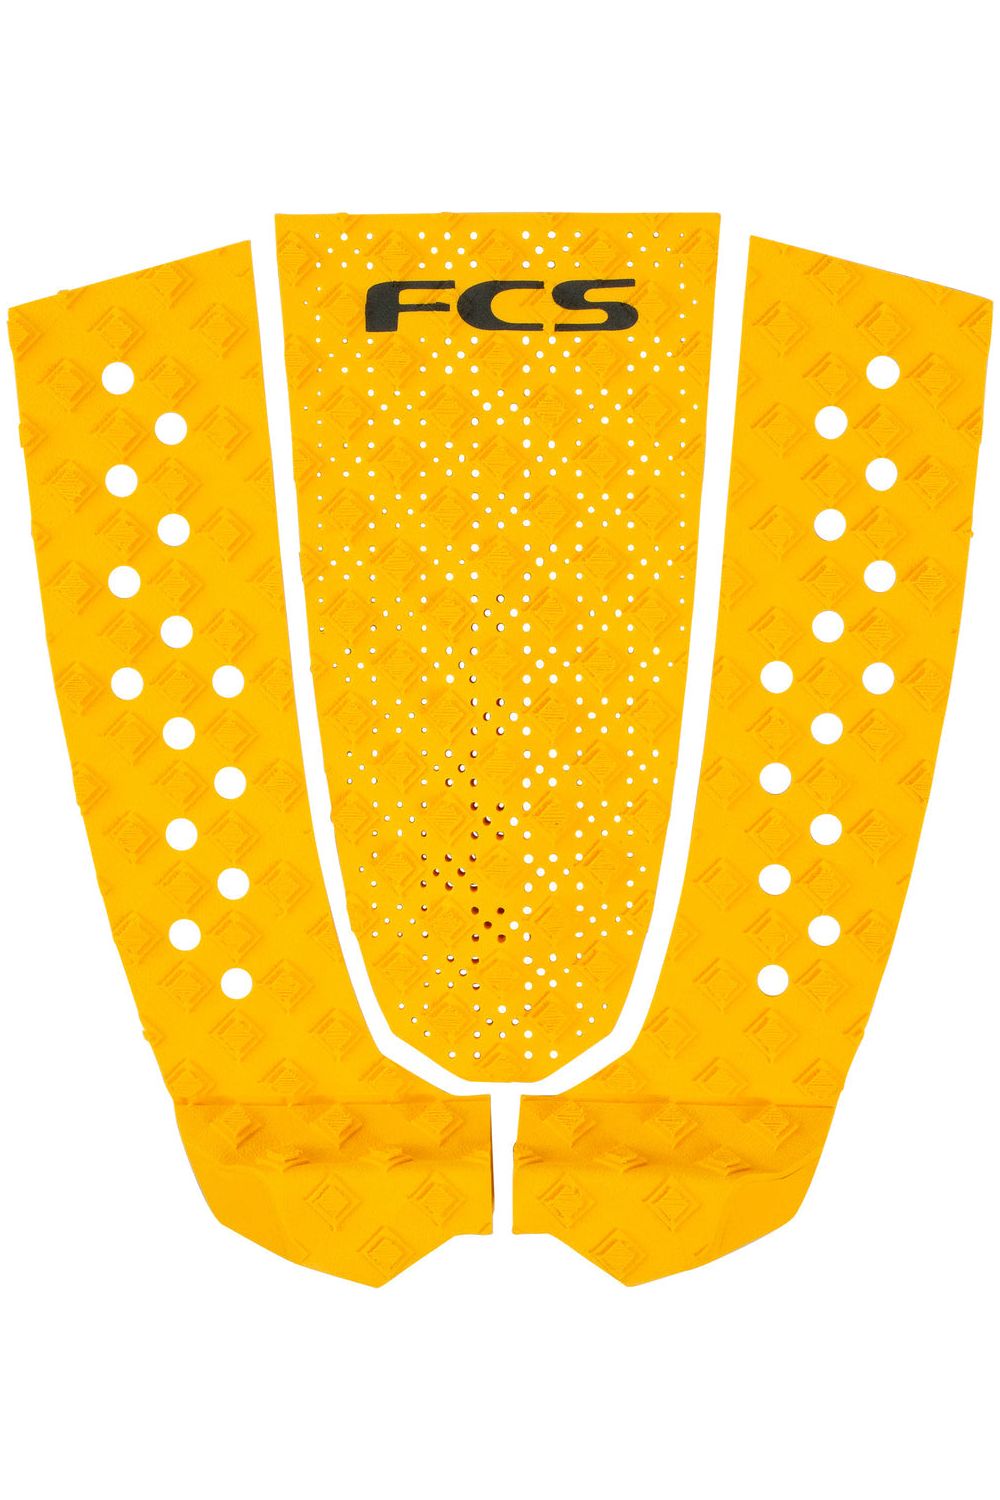 FCS T-3 Eco Mango Tail Pad